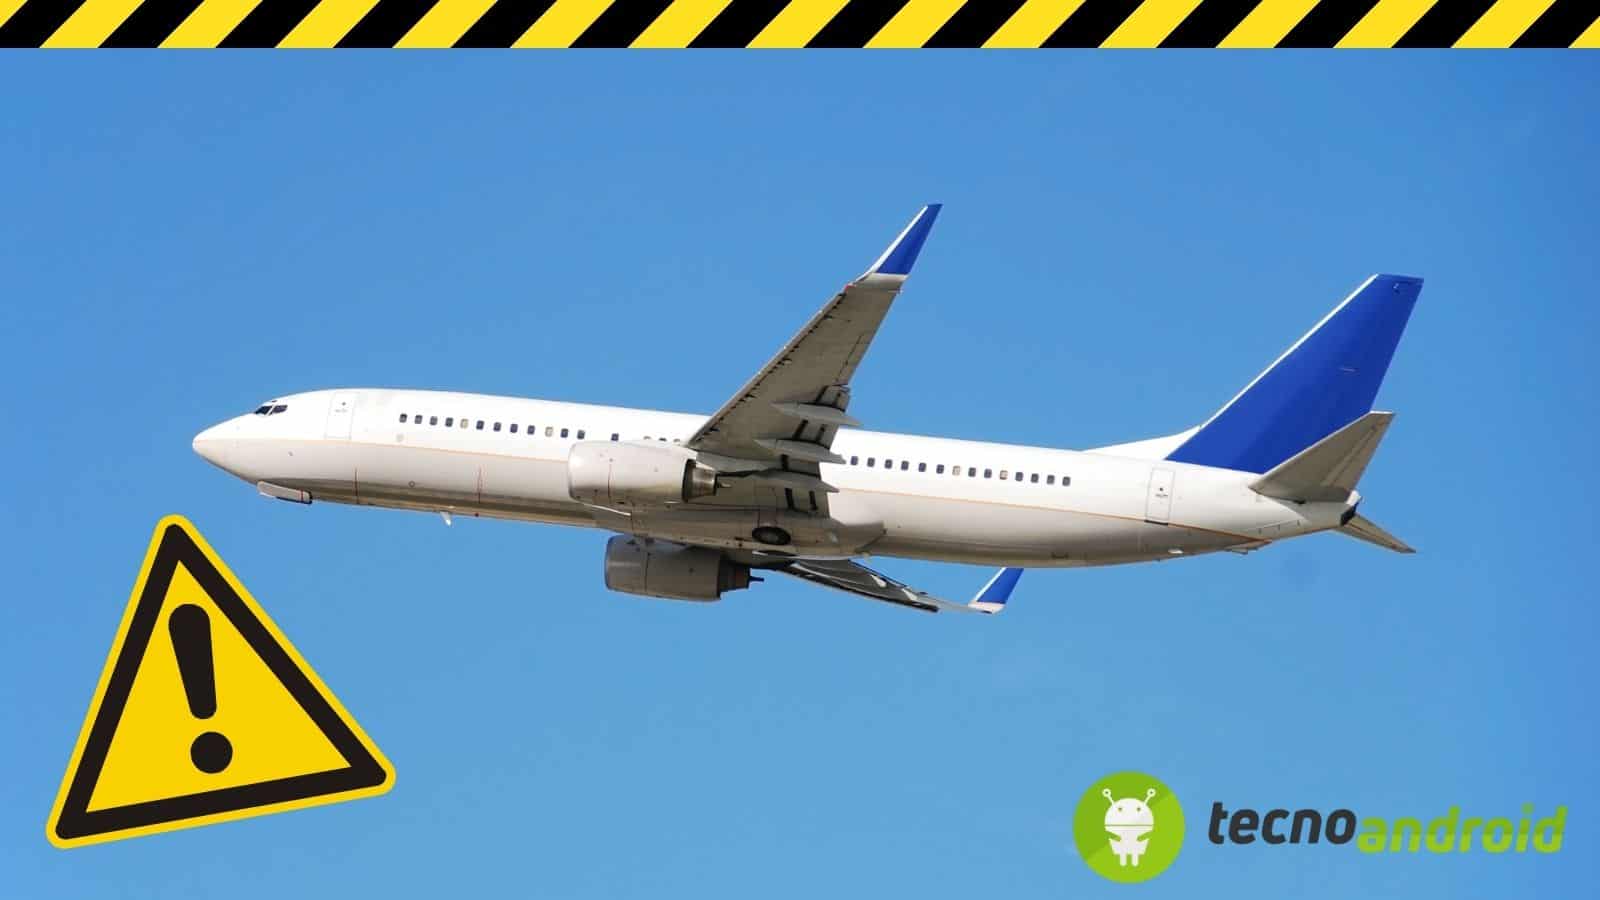 Boeing: accuse gravissime per i problemi di sicurezza degli aerei